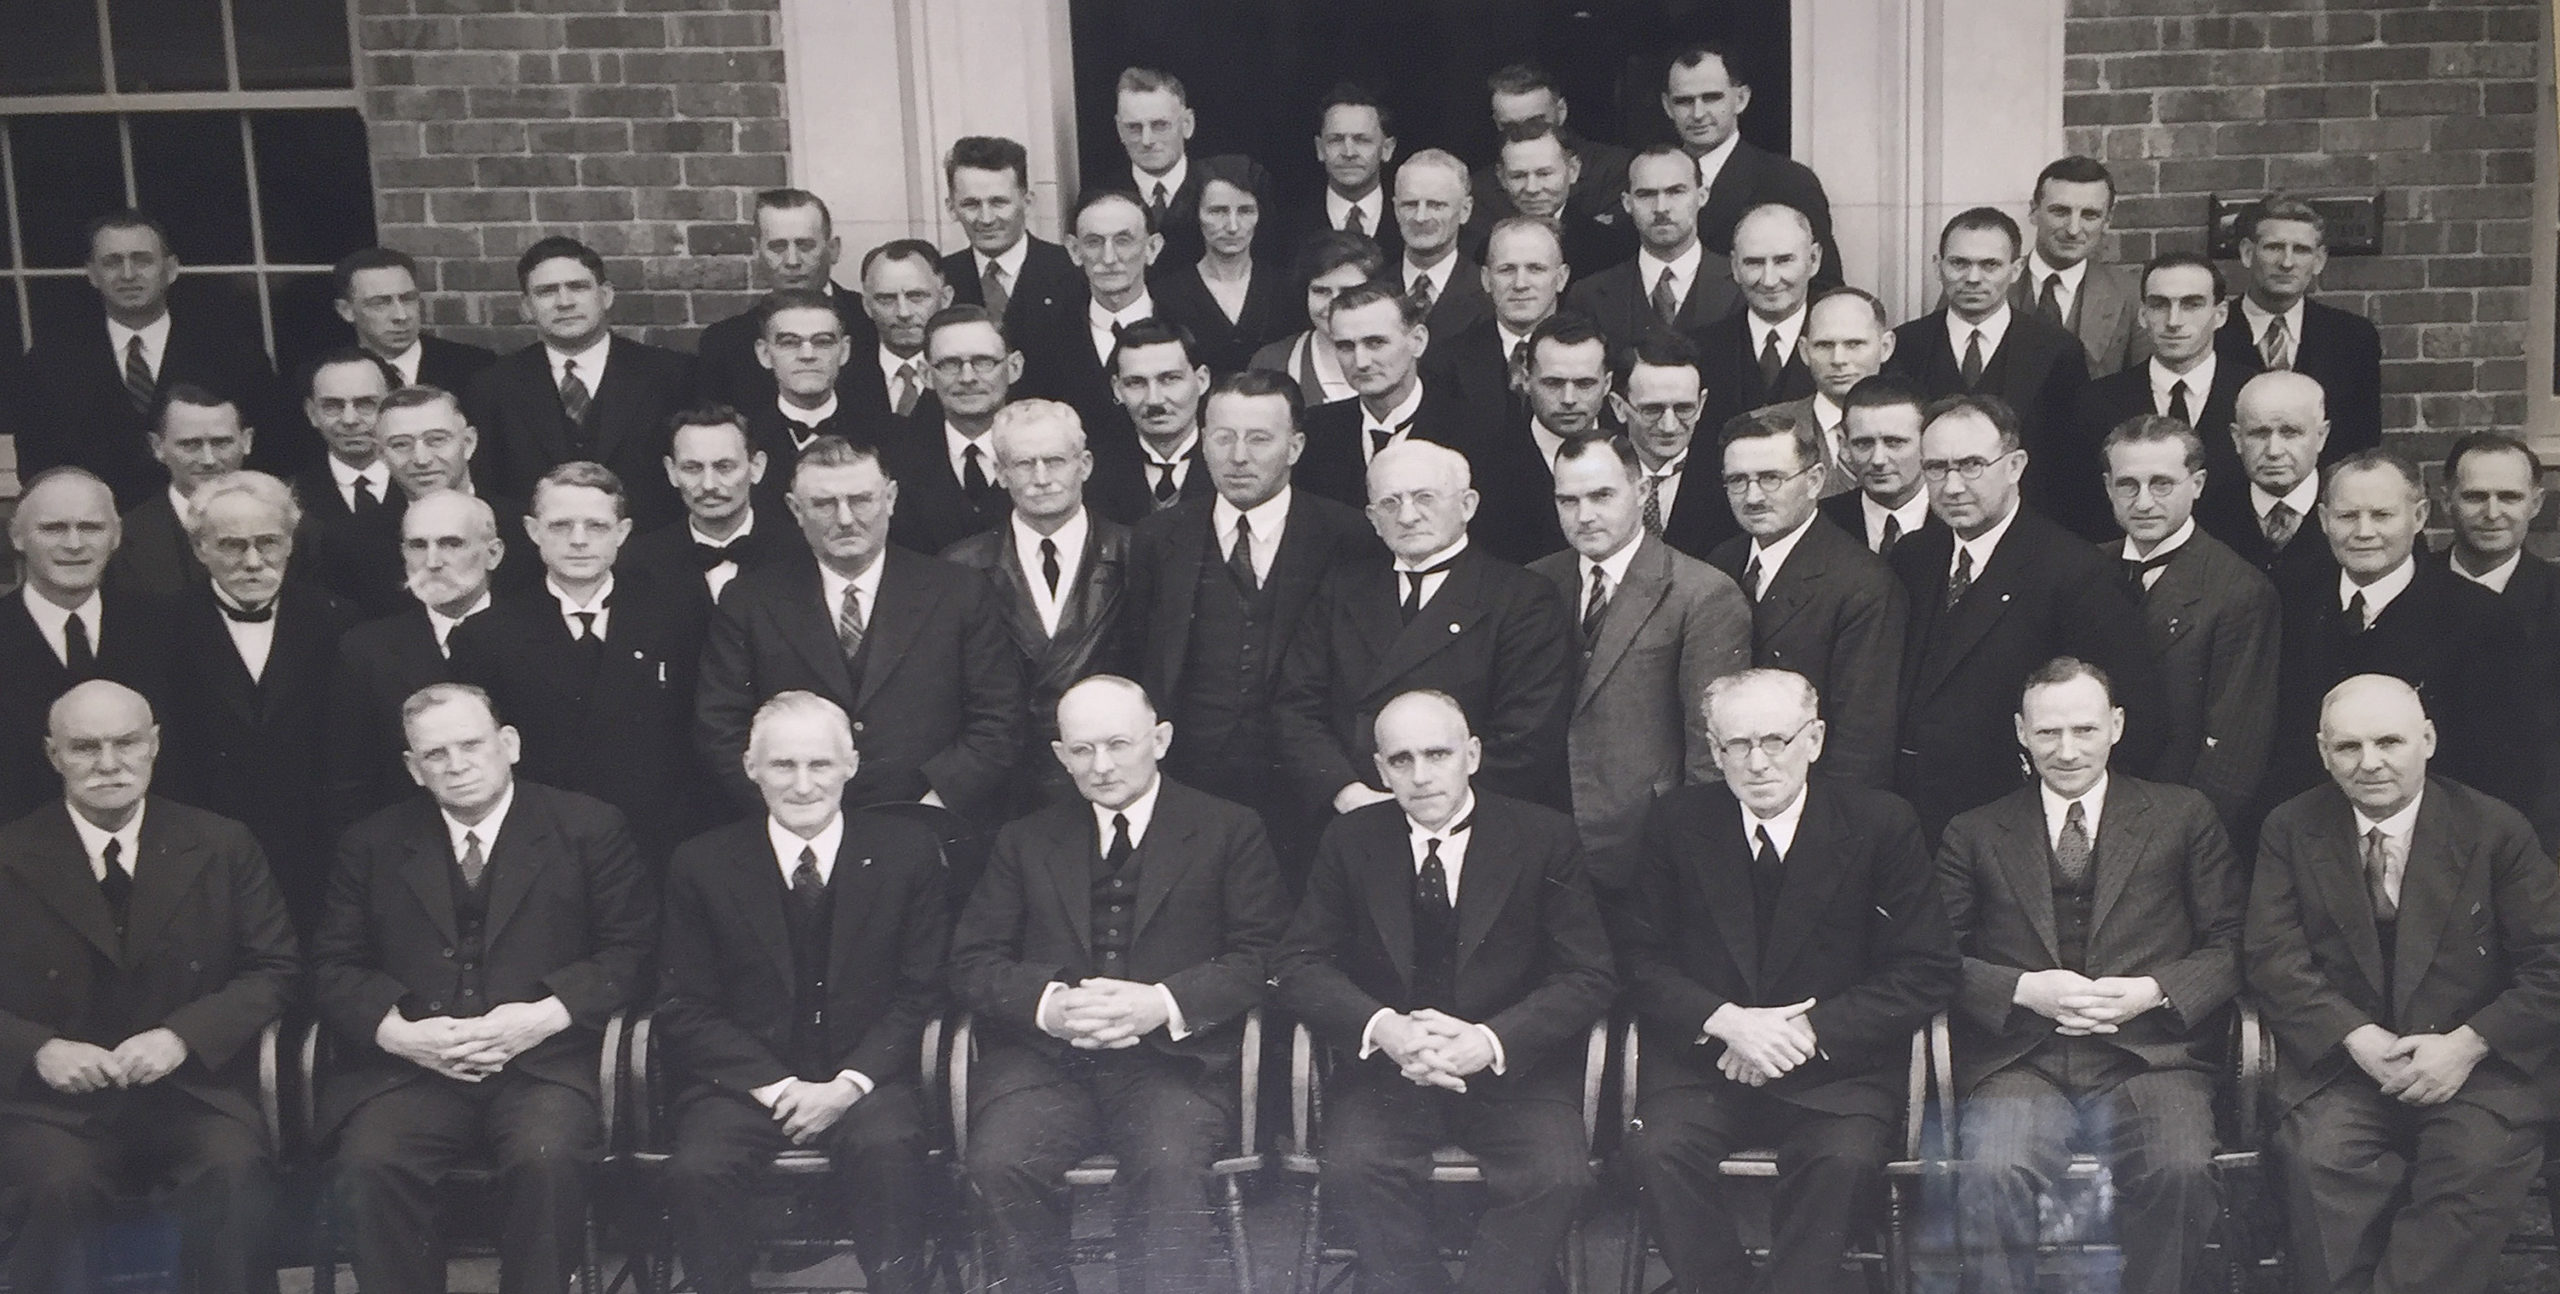 AUC Staff 1934